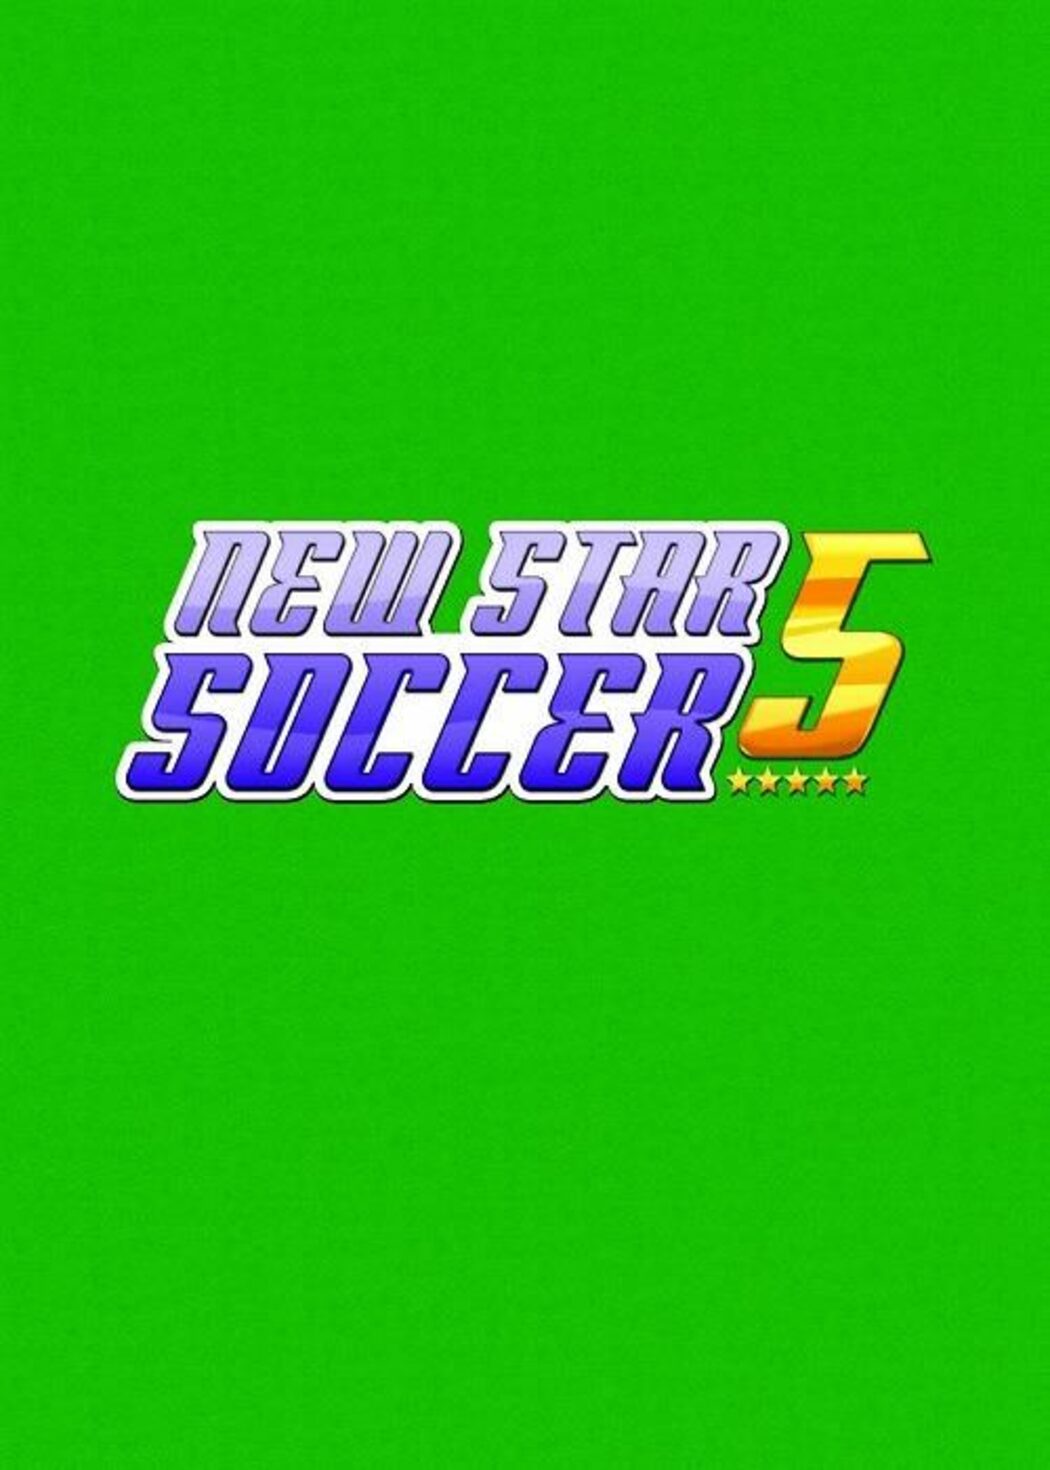 New Star Soccer 5. New star soccer